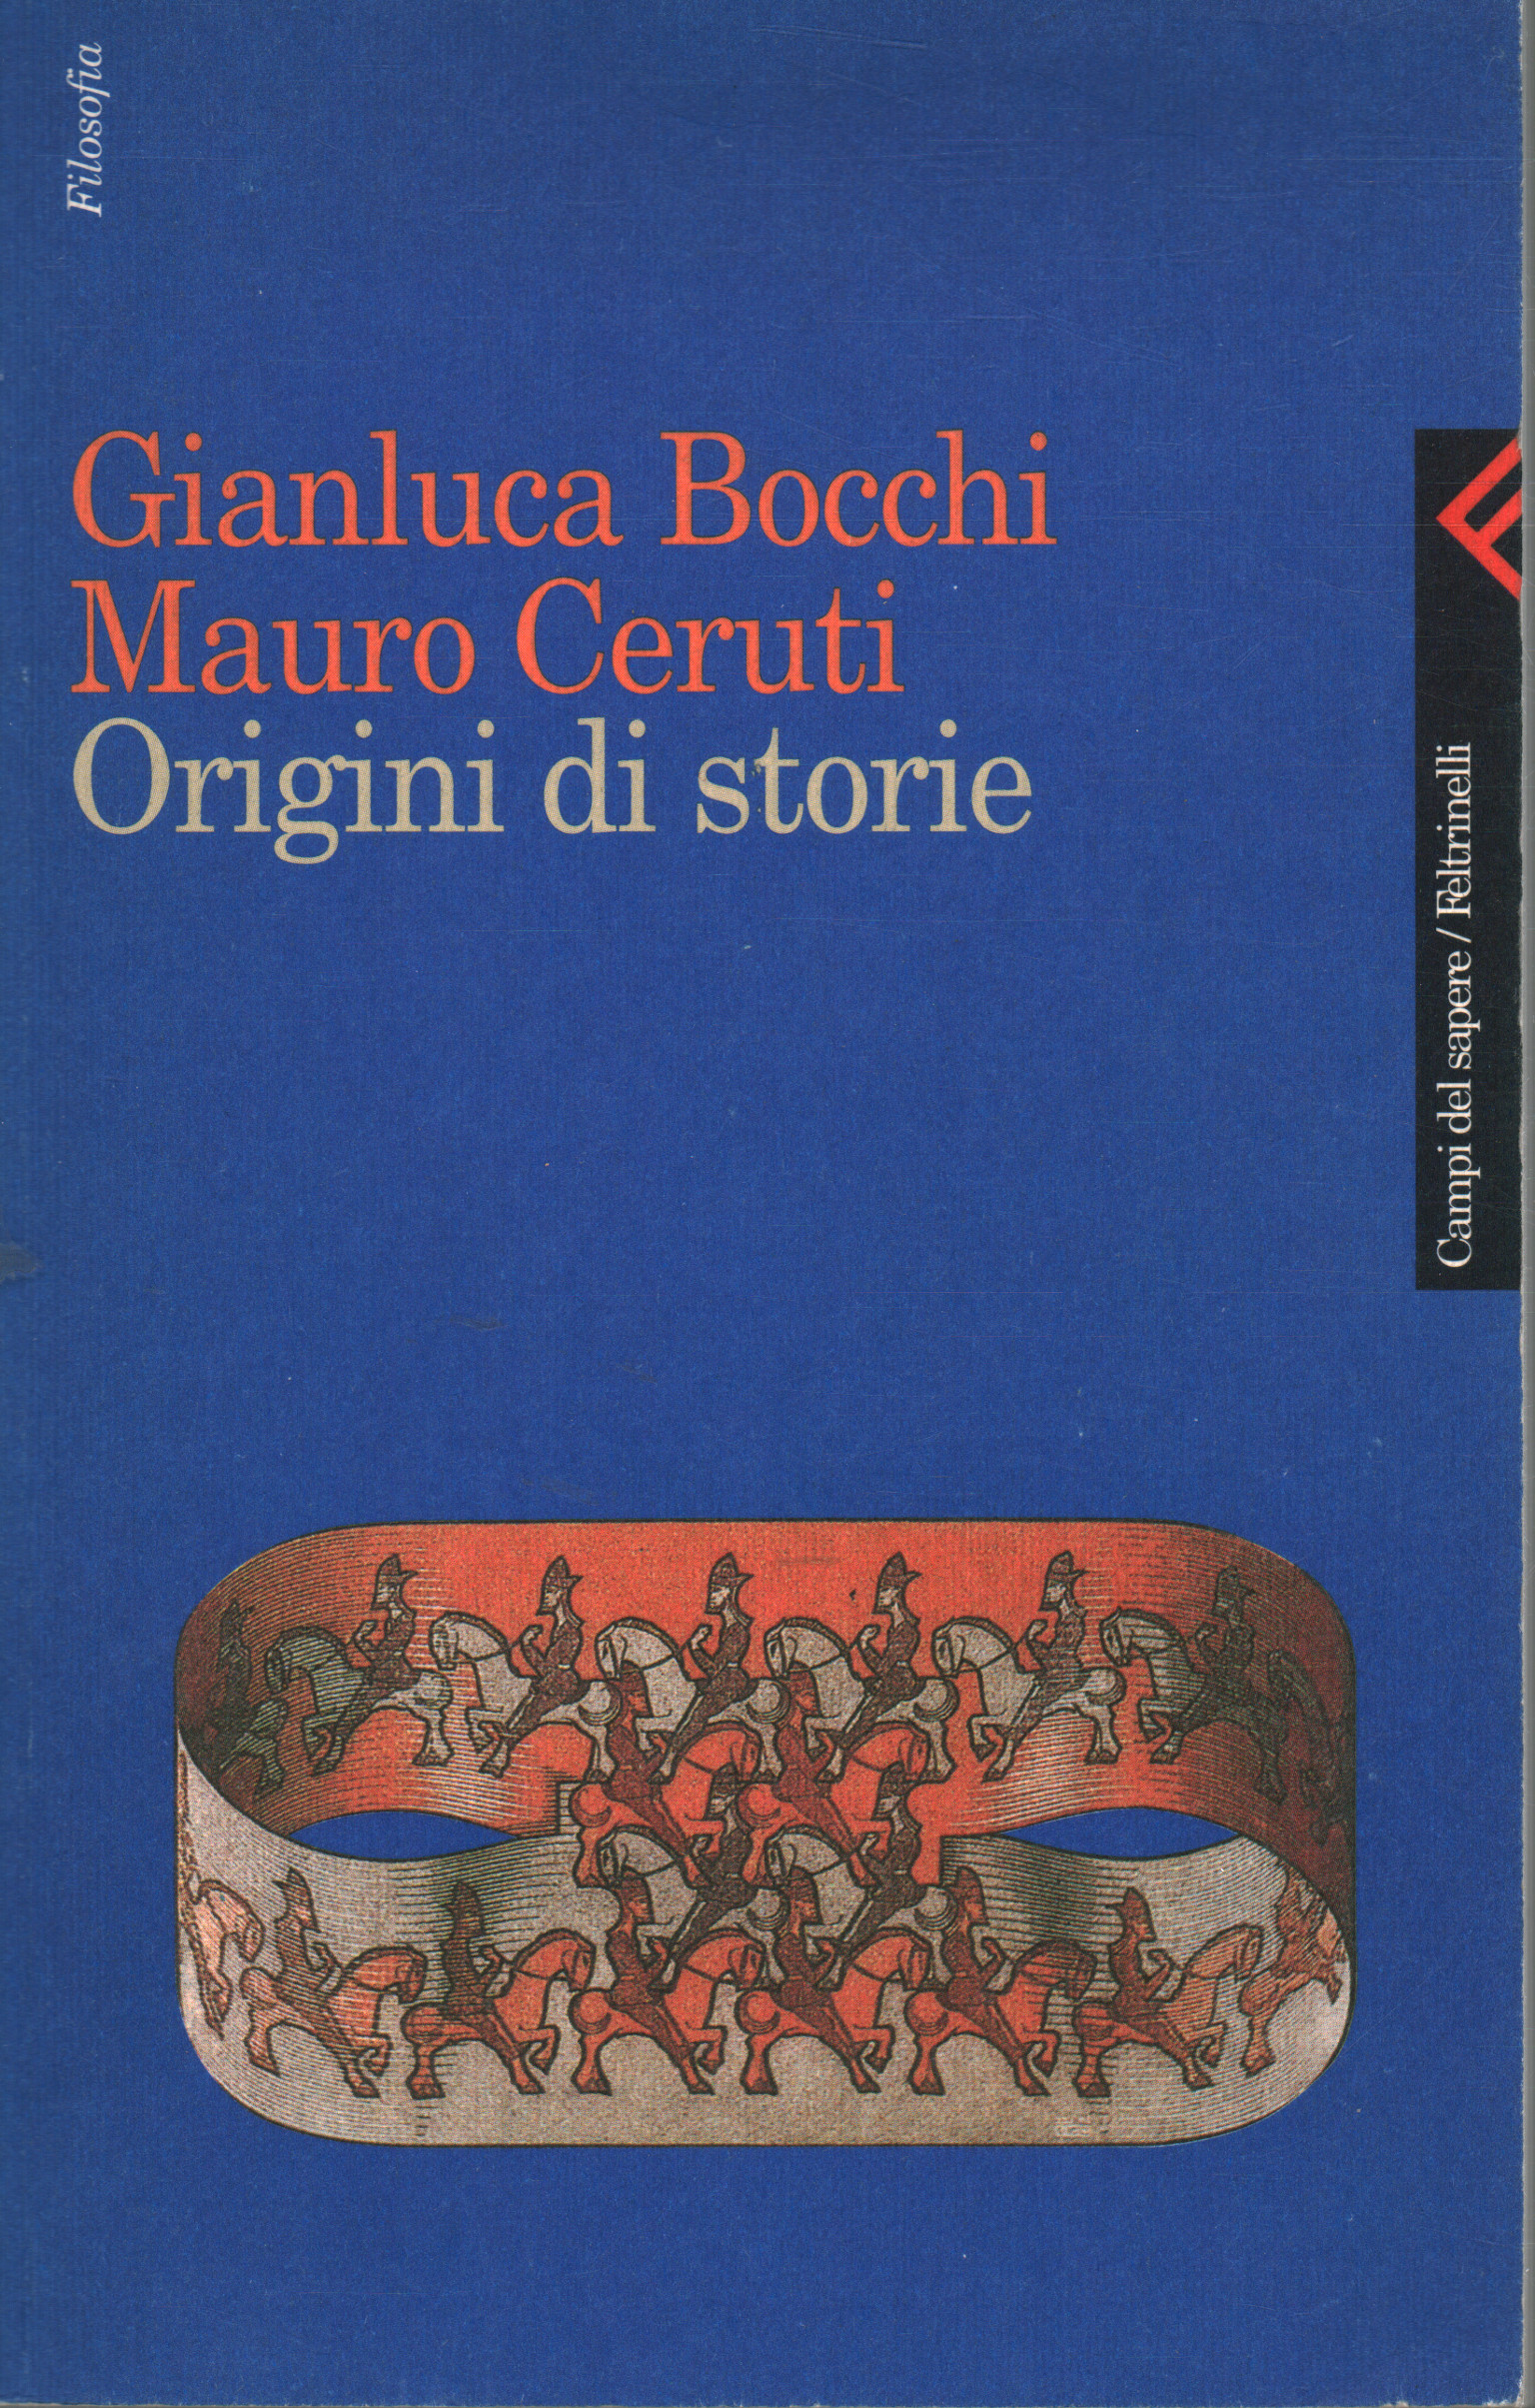 Ursprünge von geschichten, Gianluca Bocchi und Mauro Ceruti